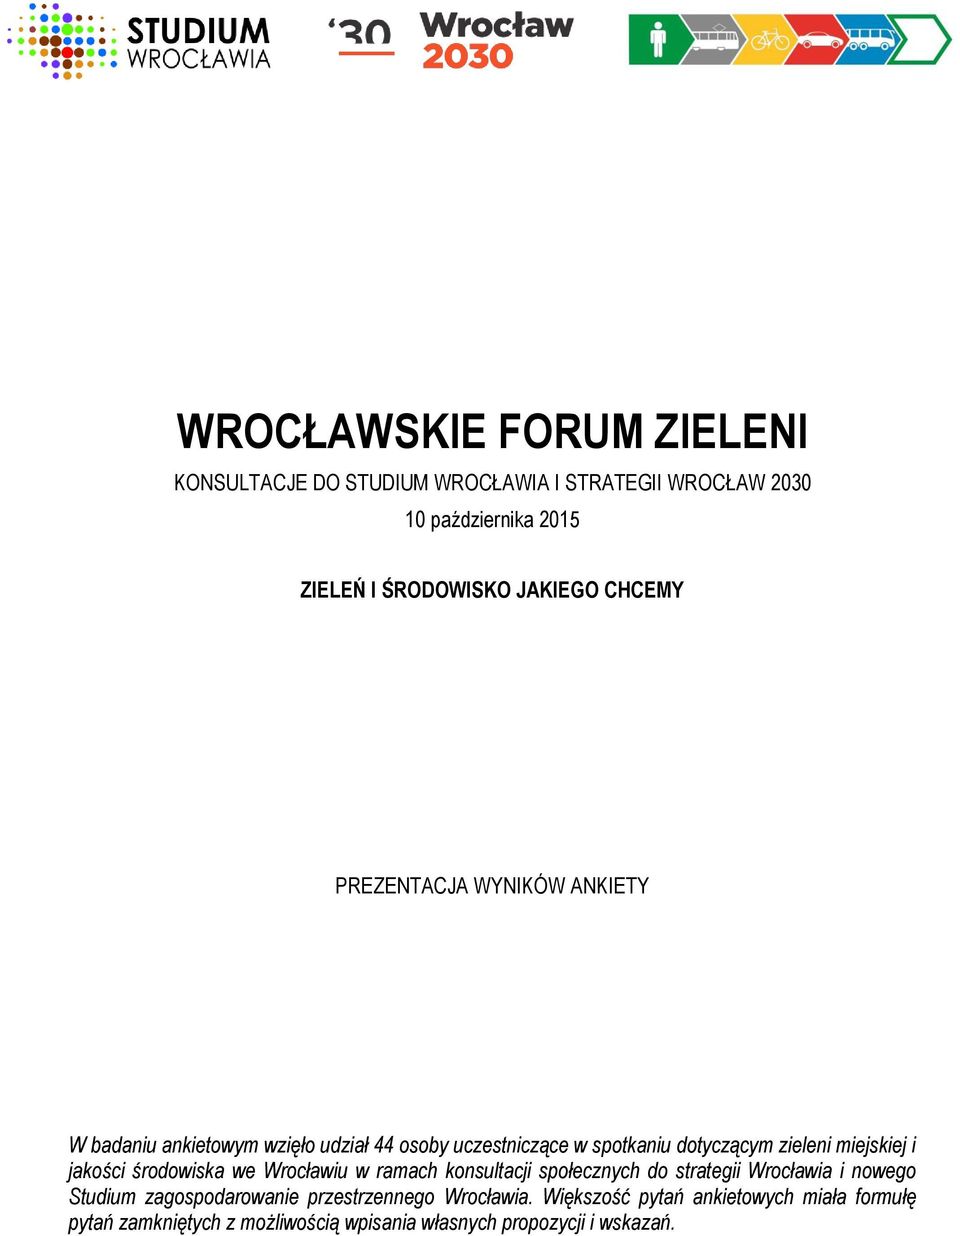 miejskiej i jakości środowiska we Wrocławiu w ramach konsultacji społecznych do strategii Wrocławia i nowego Studium